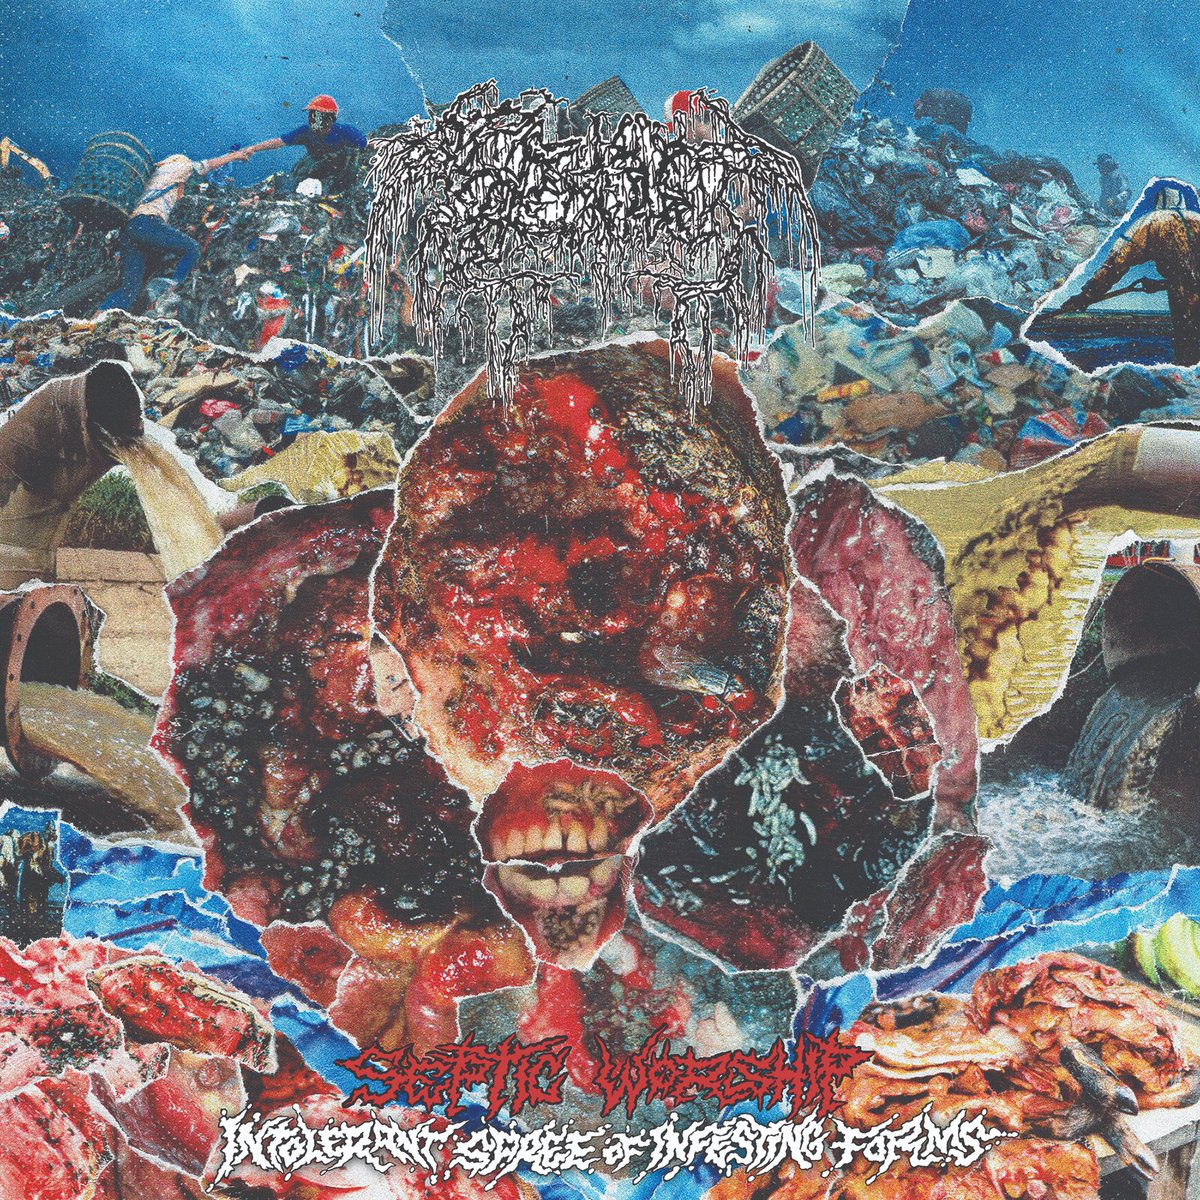 Mokvající, hnusné a smradlavé příběhy ze starých plesnivých death grindcore metalových piteven! Shnijete zaživa! Recenze/review - SEPTAGE - Septic Worship (Intolerant Spree of Infesting Forms) (2024): deadlystormzine.com/2024/05/recenz… #deathmetal #septage #grindcore #review .@mesacounojo